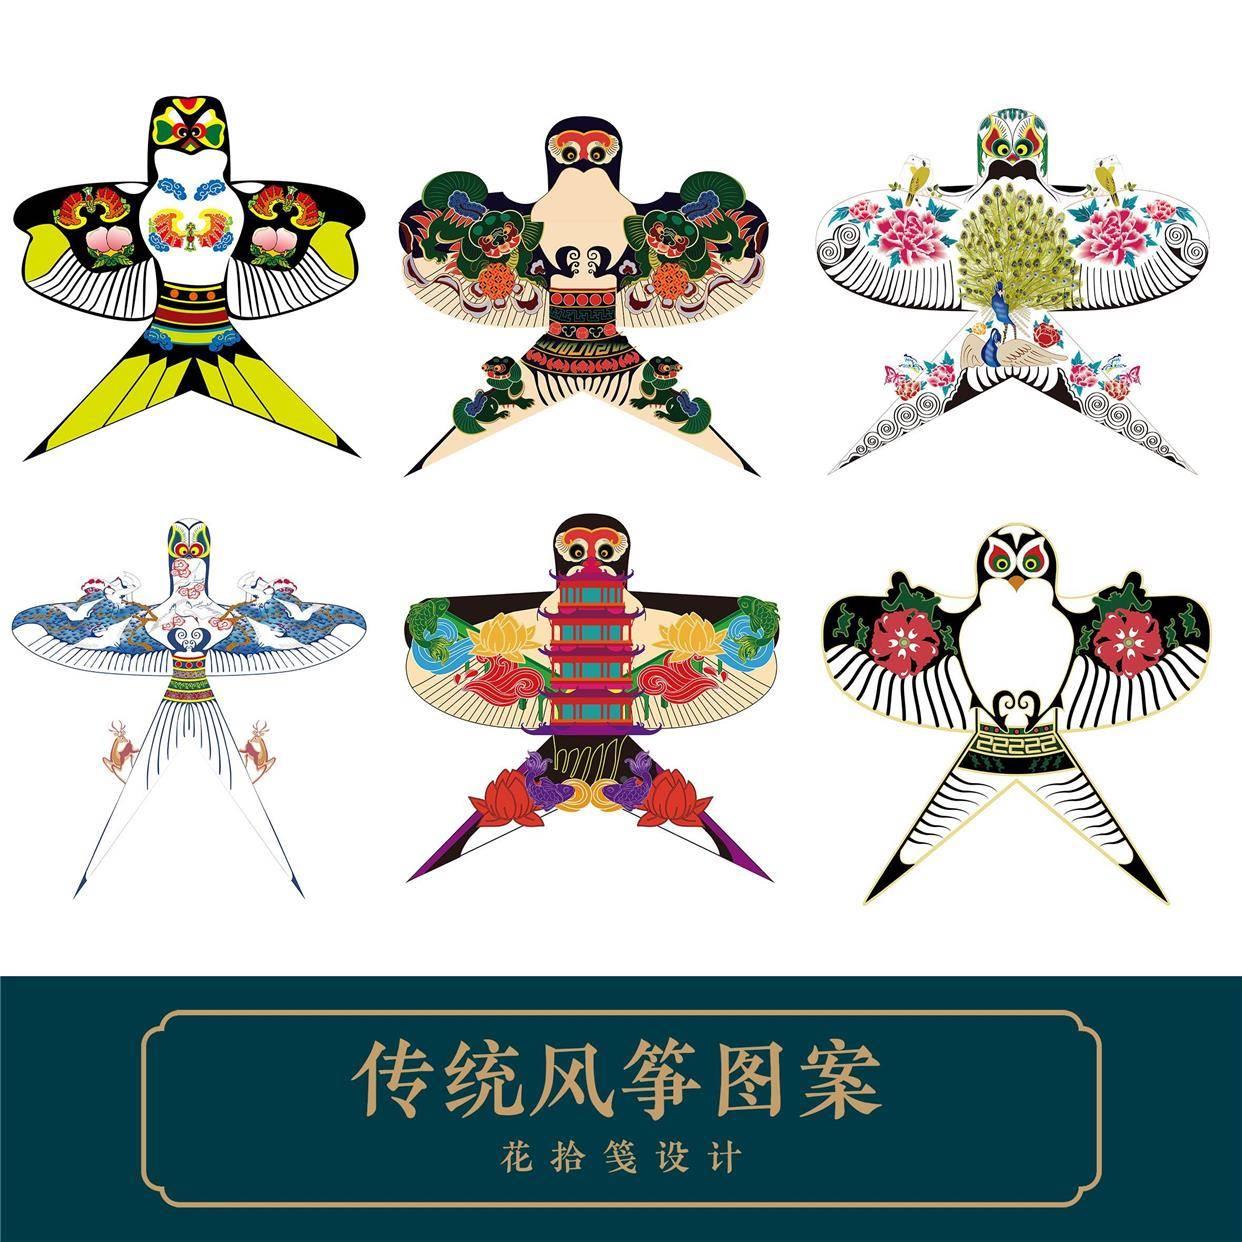 中国传统风筝图片图案